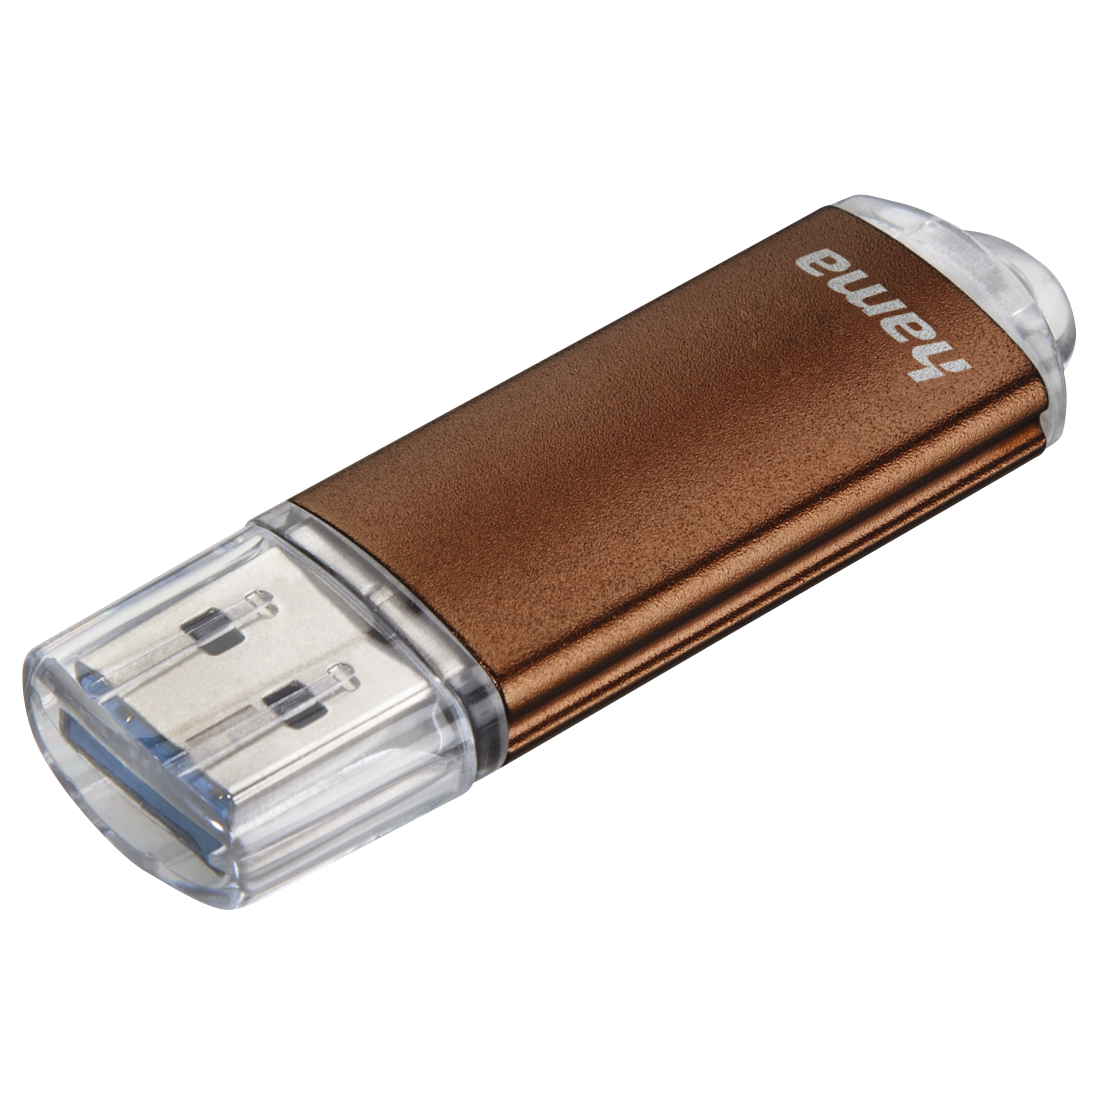 00124004 Hama "Laeta" USB Stick, USB 3.0, 64 GB, 70 MB/s, bronze